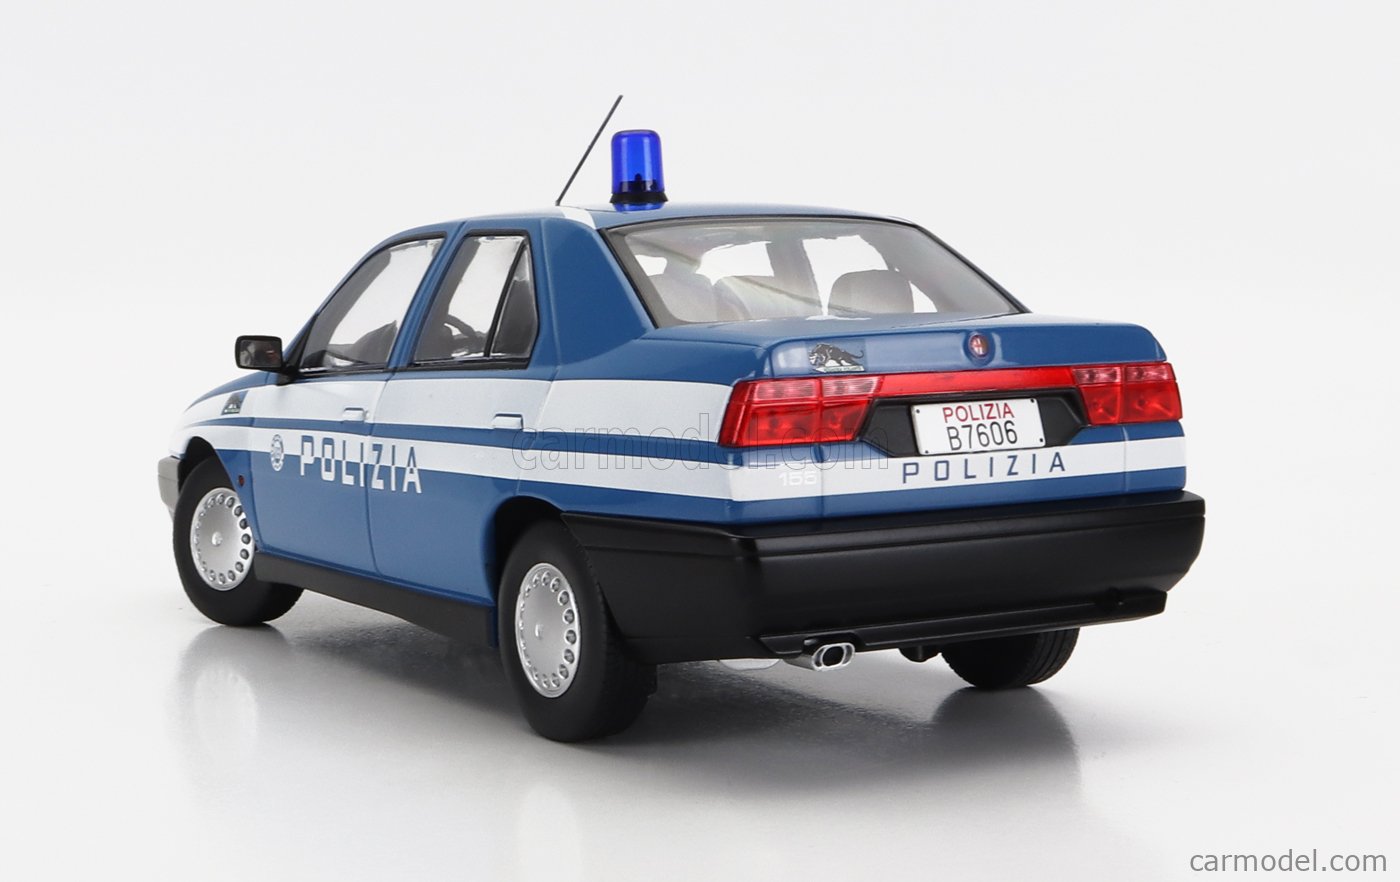 ALFA ROMEO - 155 POLIZIA (POLICE) 1996